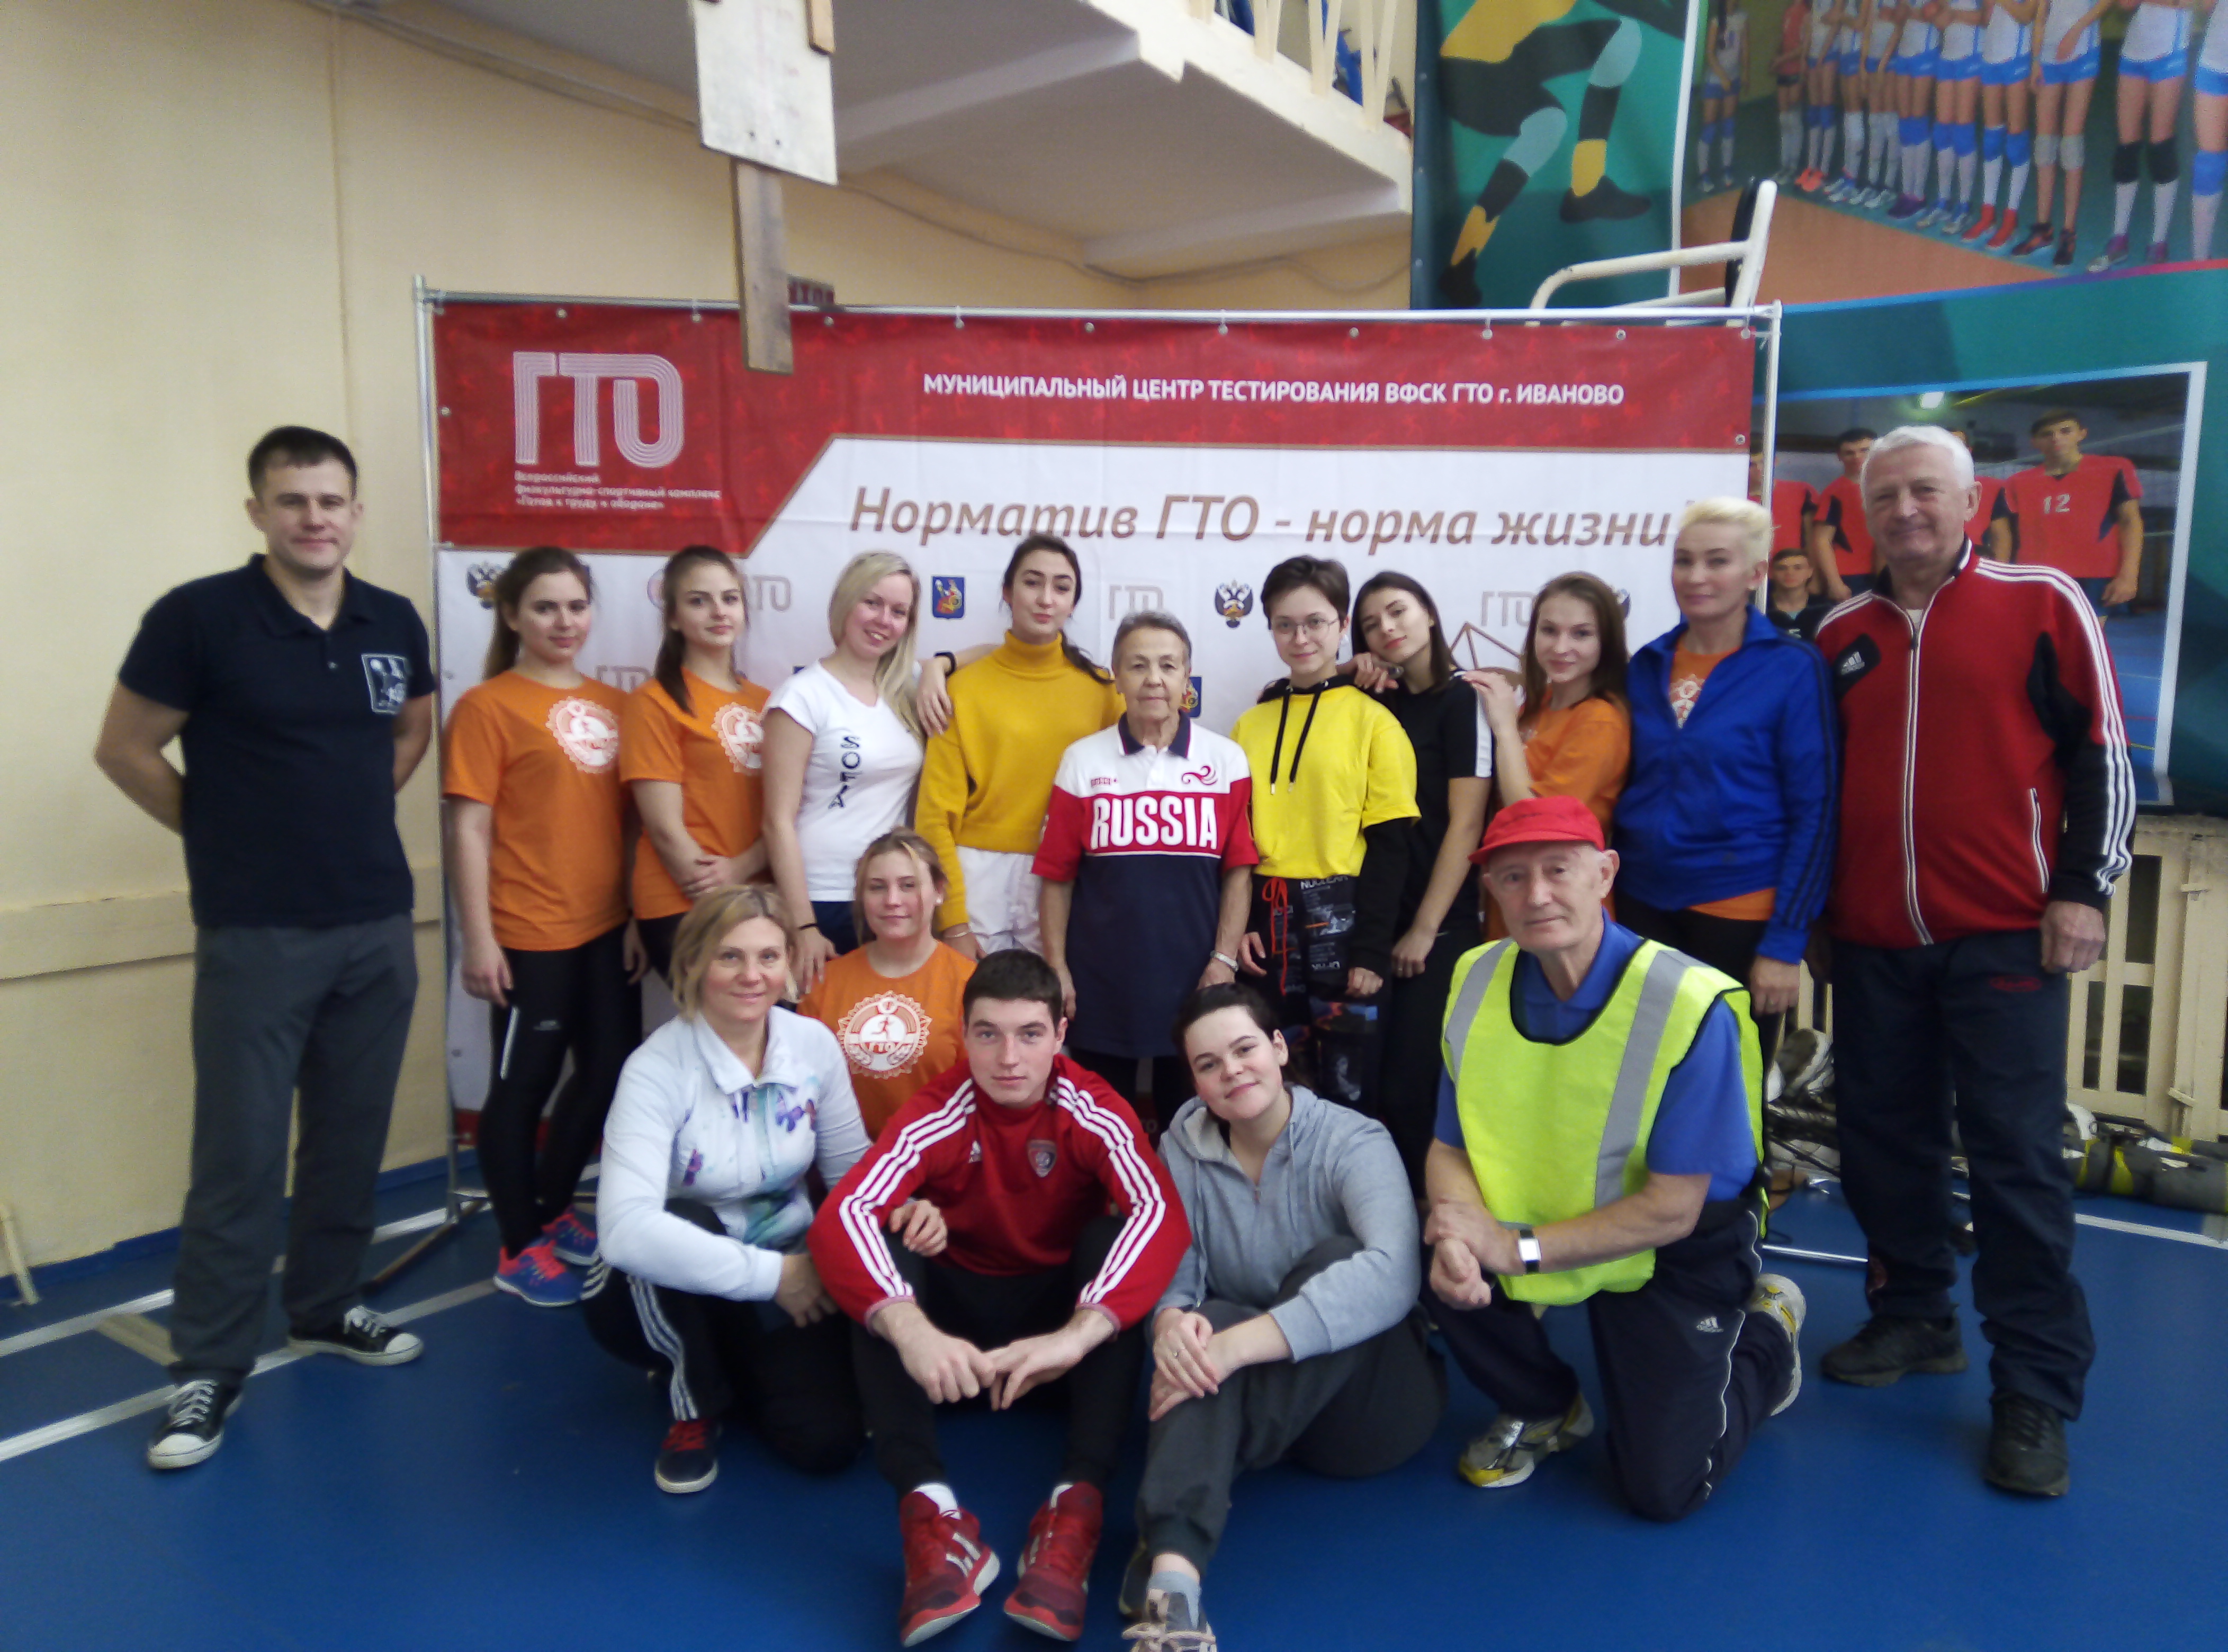 Более 30 процентов жителей Ивановской области систематически занимаются спортом